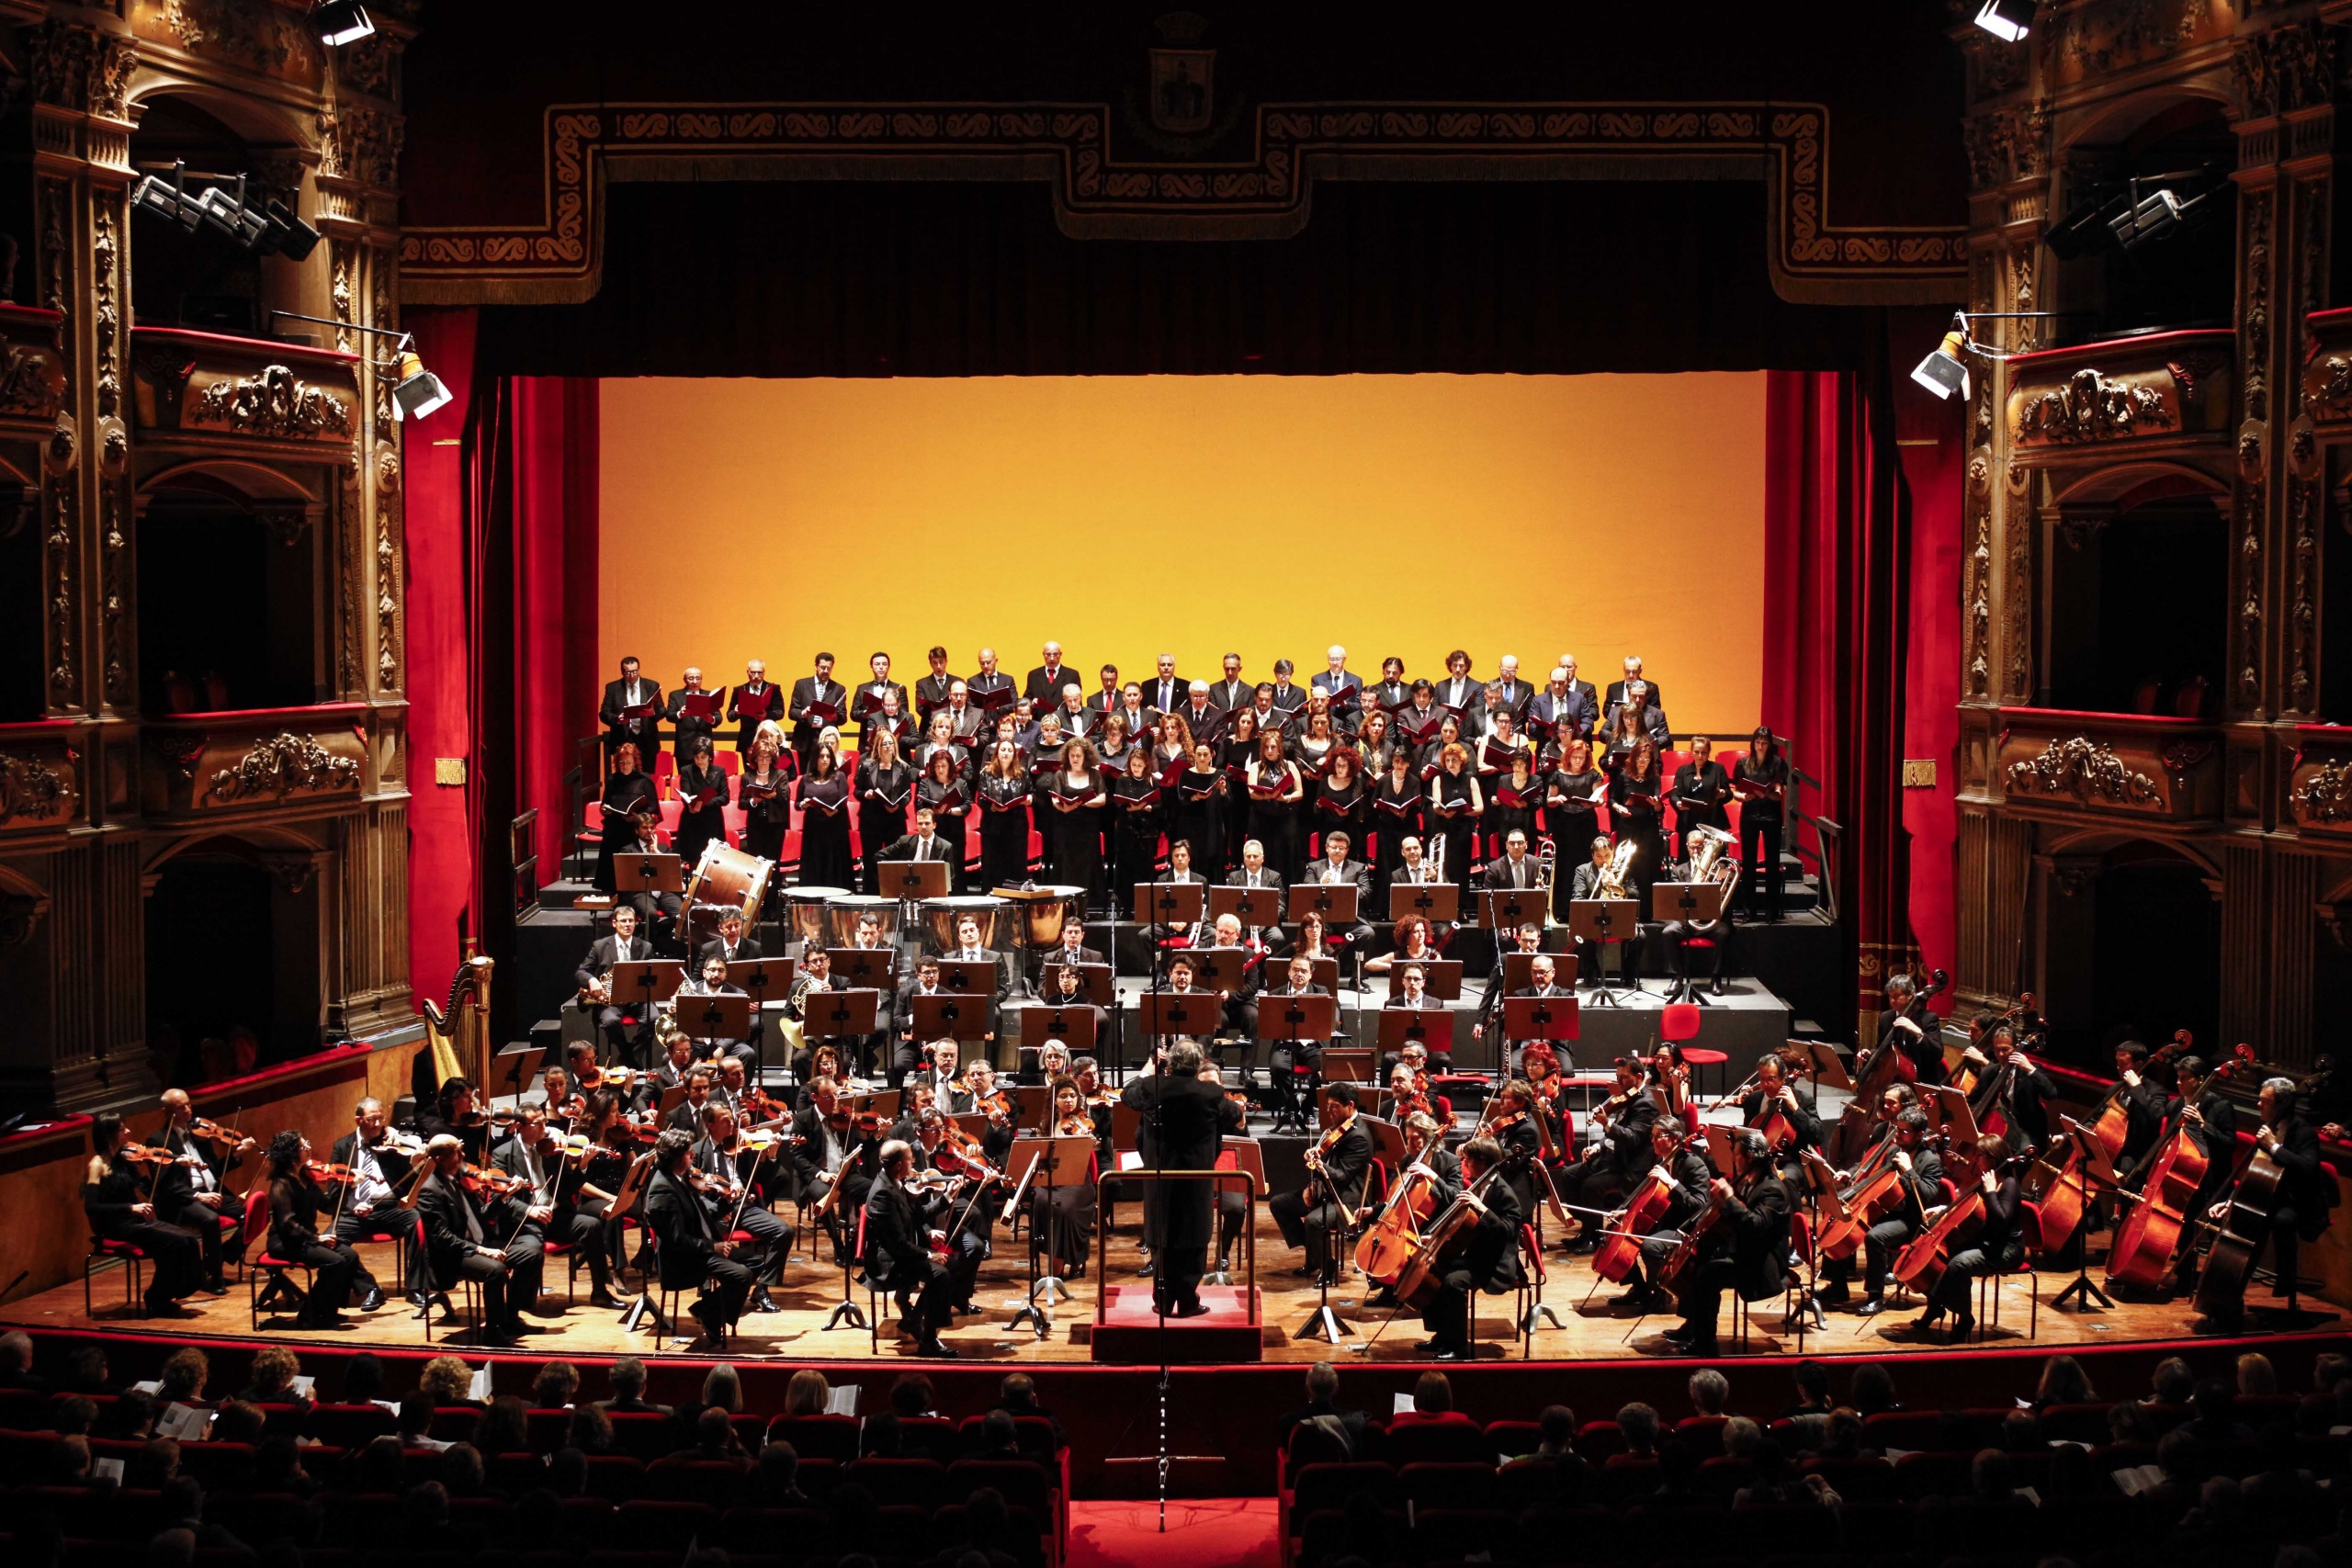 Musica per la pace: il Teatro Massimo Bellini promuove un concerto e una raccolta fondi in collaborazione con la Croce Rossa a favore della popolazione ucraina